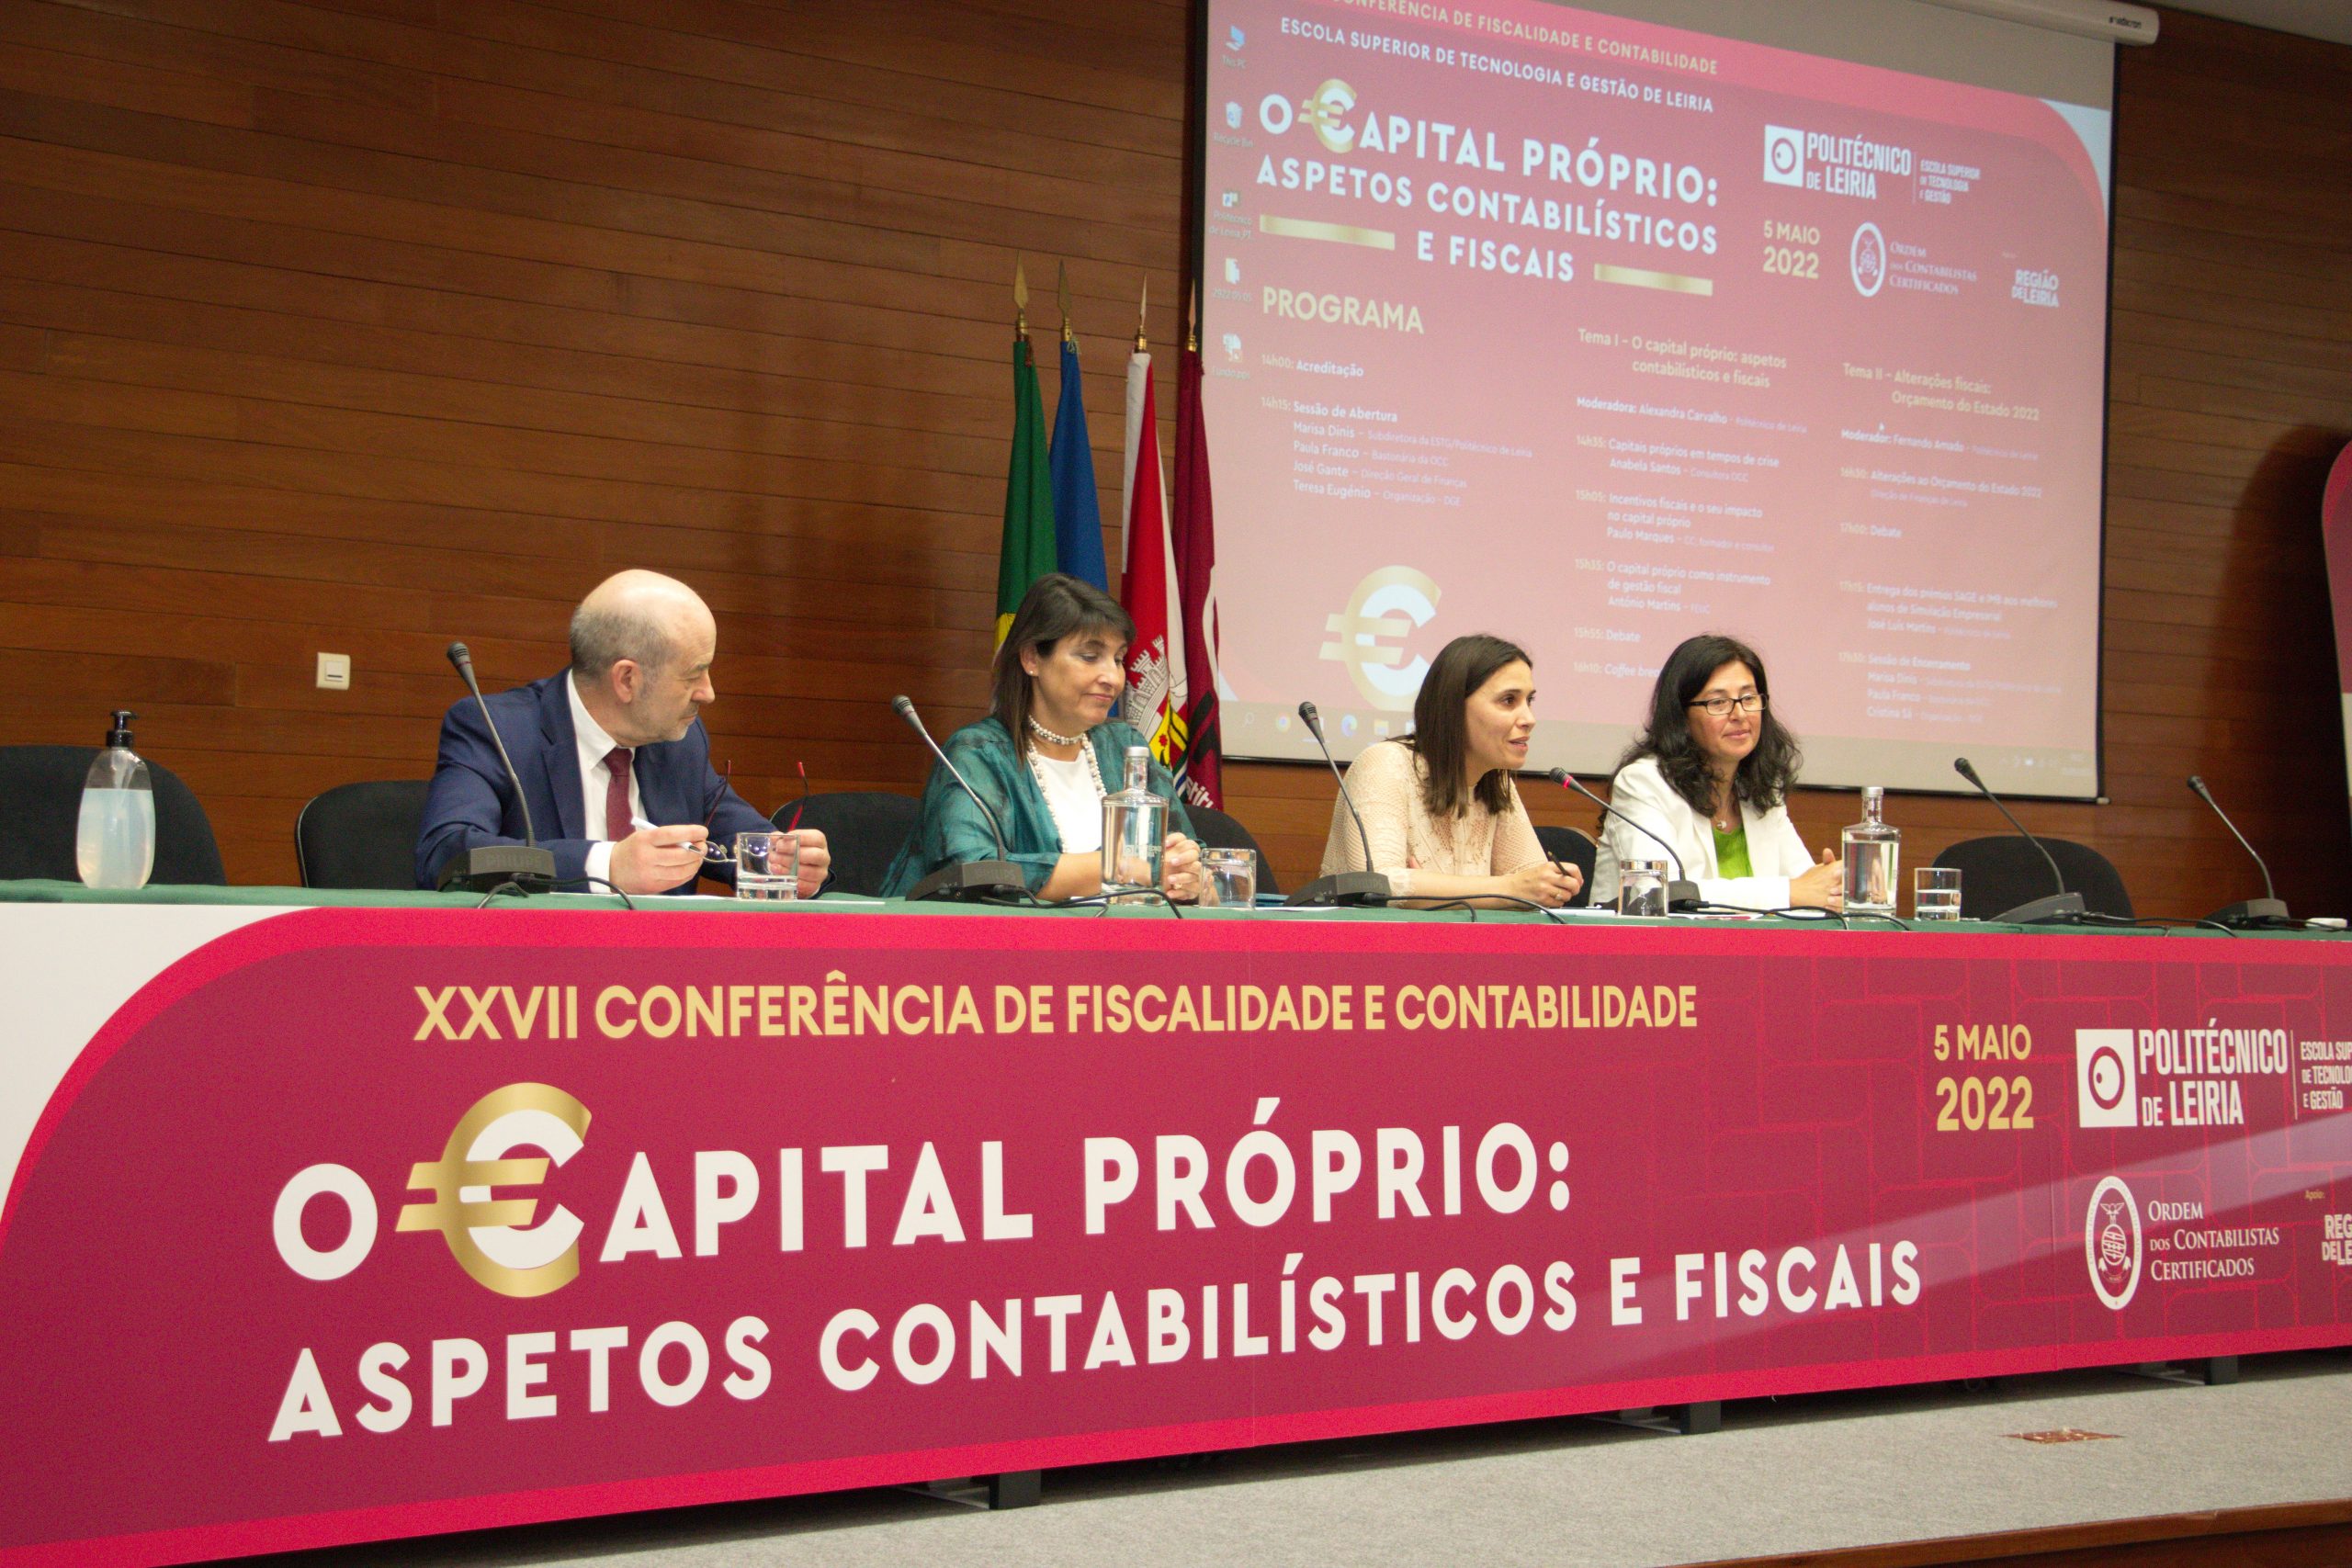 XXVII Conferência de Fiscalidade e Contabilidade